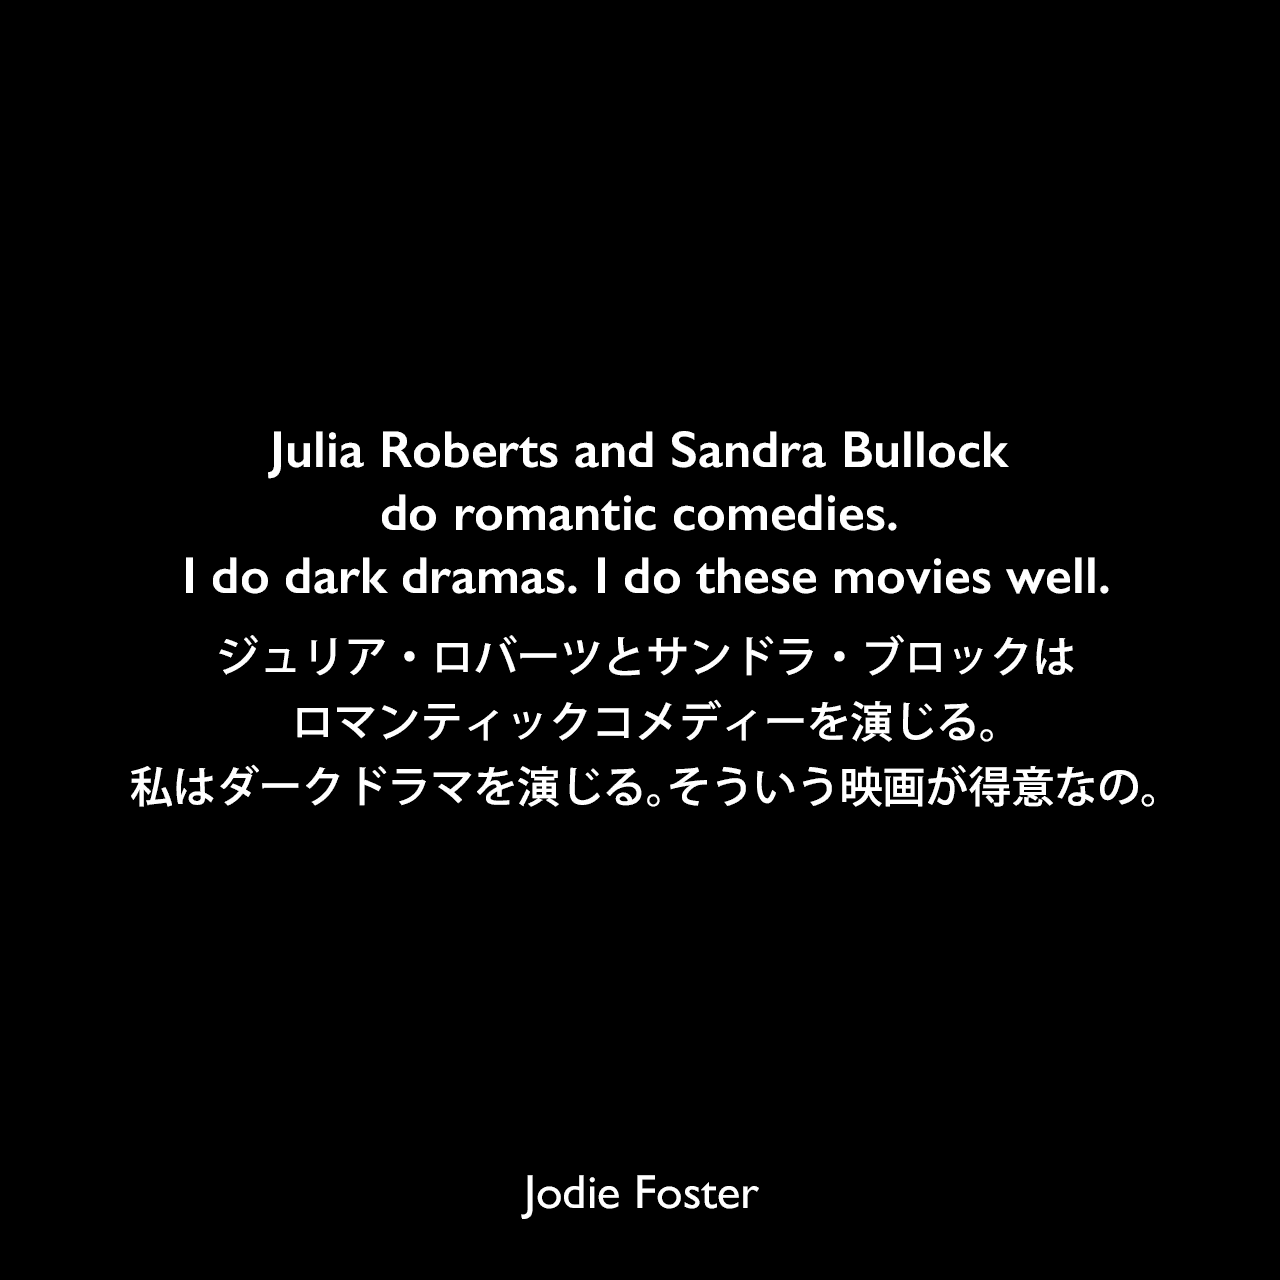 Julia Roberts and Sandra Bullock do romantic comedies. I do dark dramas. I do these movies well.ジュリア・ロバーツとサンドラ・ブロックはロマンティックコメディーを演じる。私はダークドラマを演じる。そういう映画が得意なの。Jodie Foster